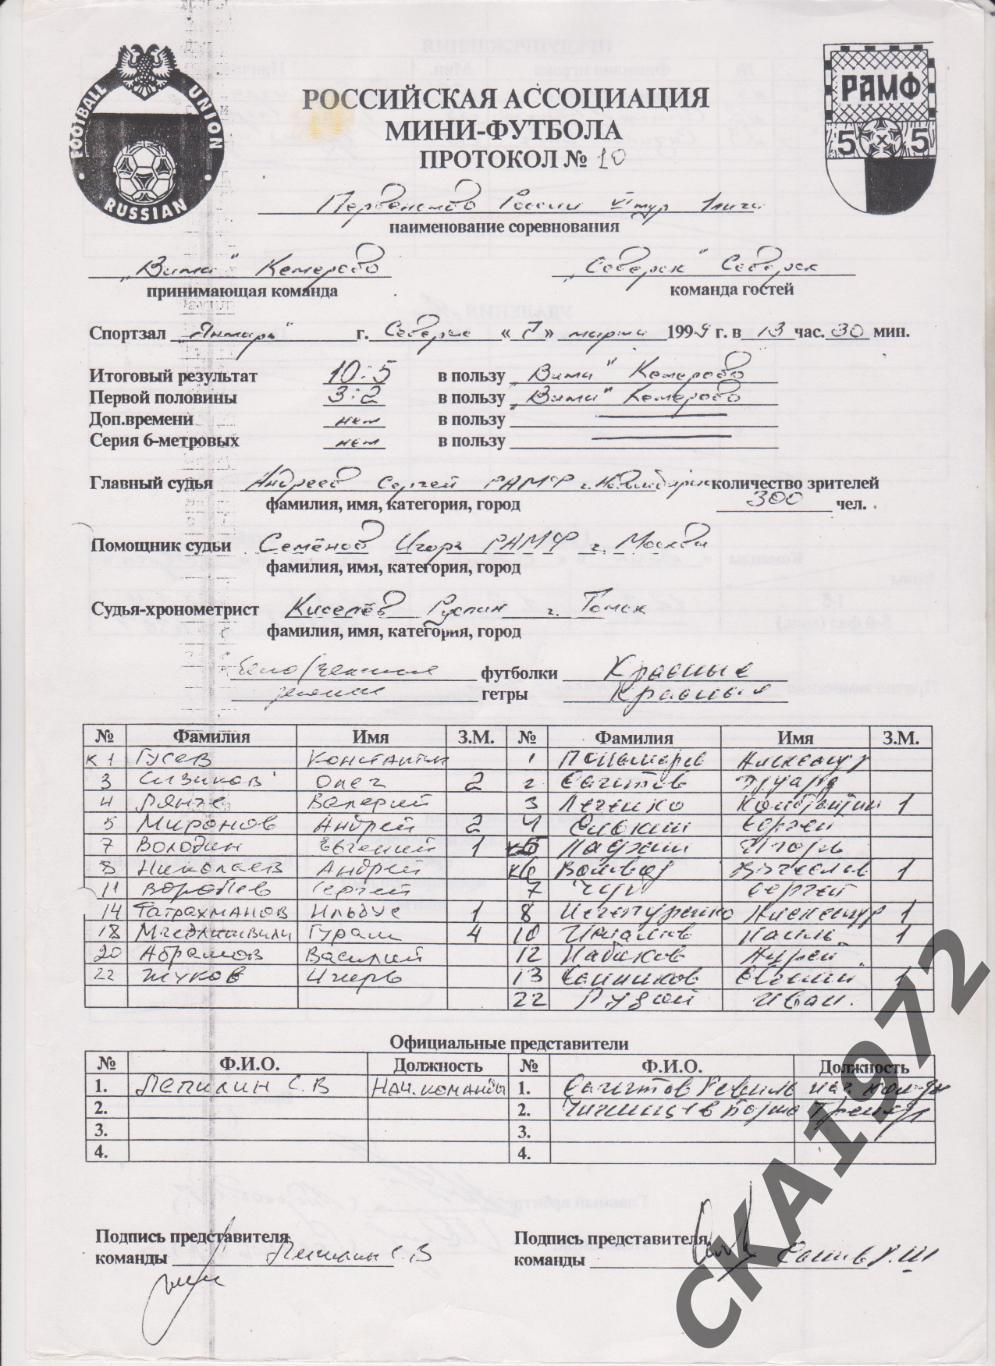 протоколы мини-футбол 1 лига дивизион А Северск 3-7 марта 1999 10 штук копии + 2